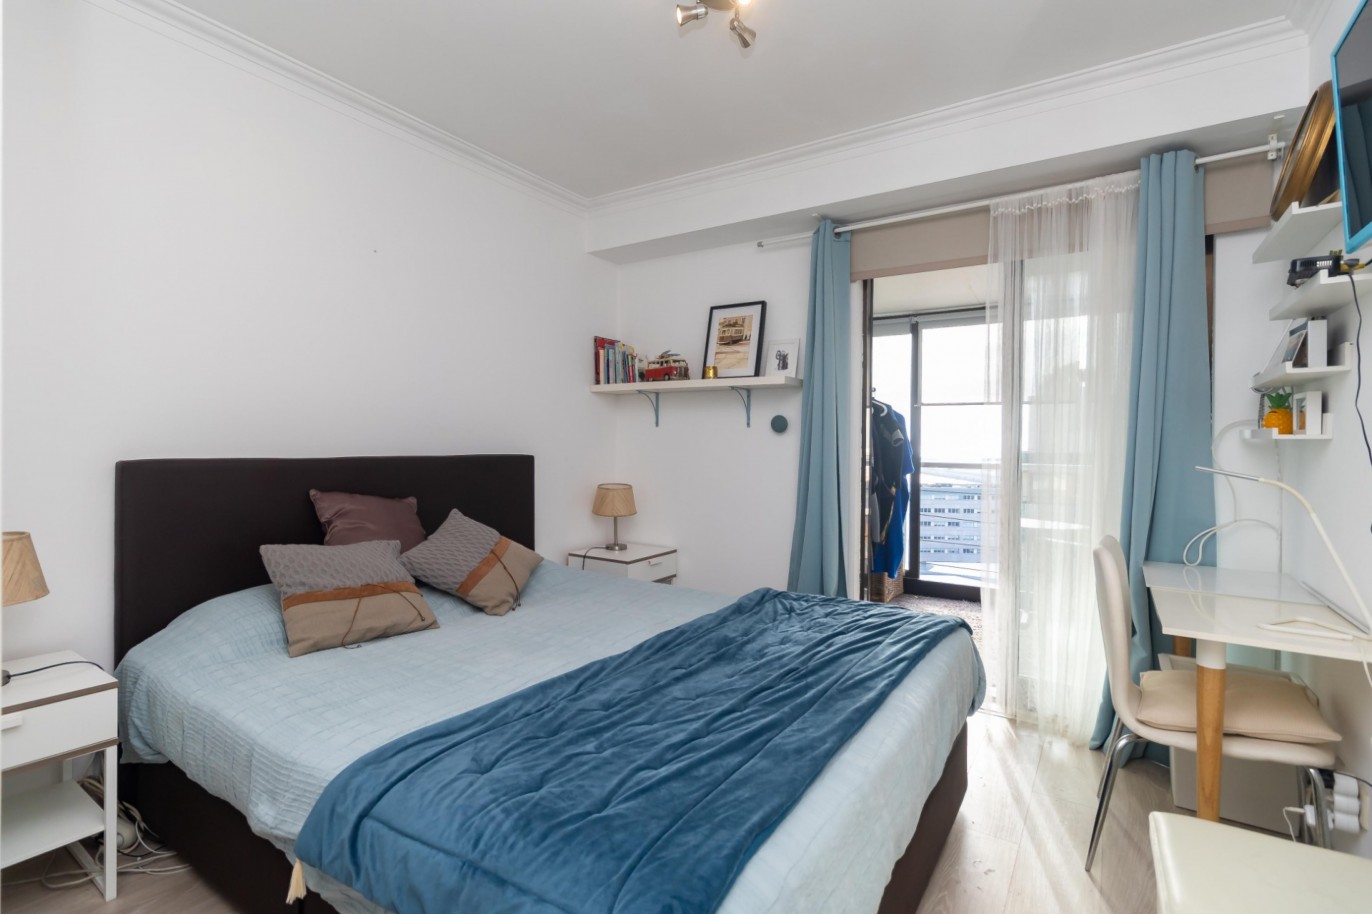 Wohnung mit Mezzanin und Meerblick, zu verkaufen, in Matosinhos Sul, Porto, Portugal_210210